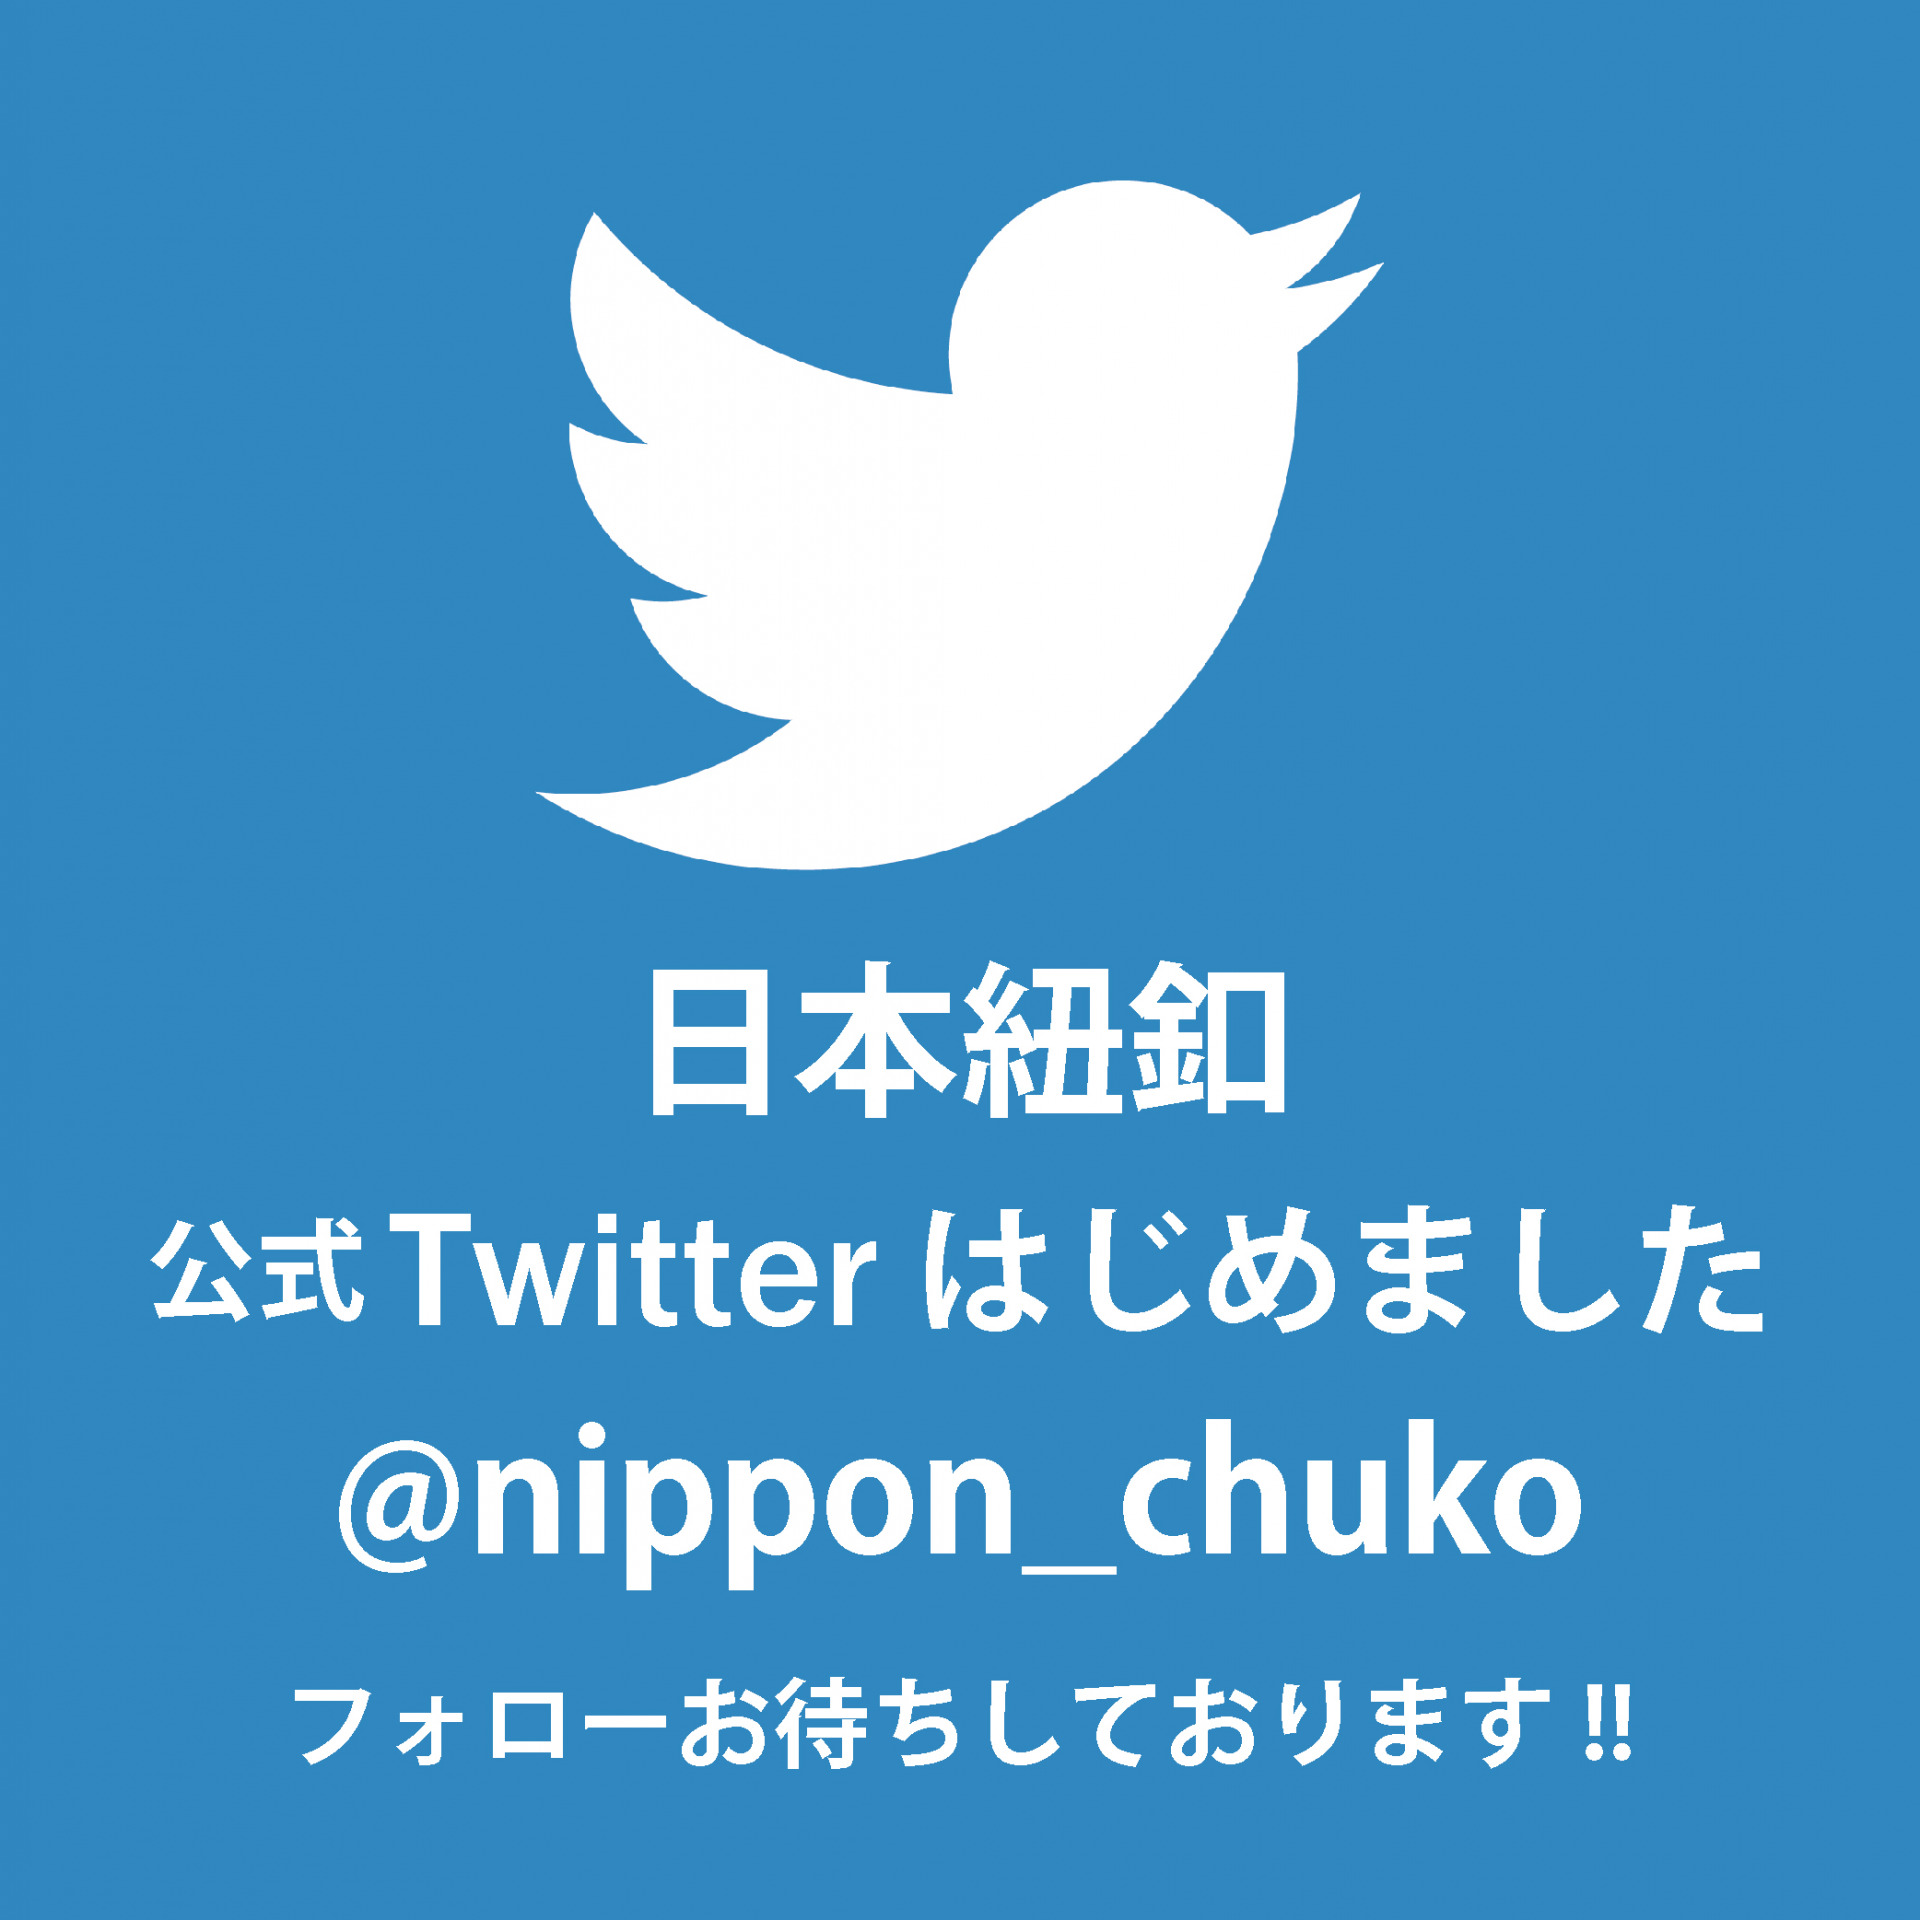 nippon-chuko_Twitterアカウント紹介